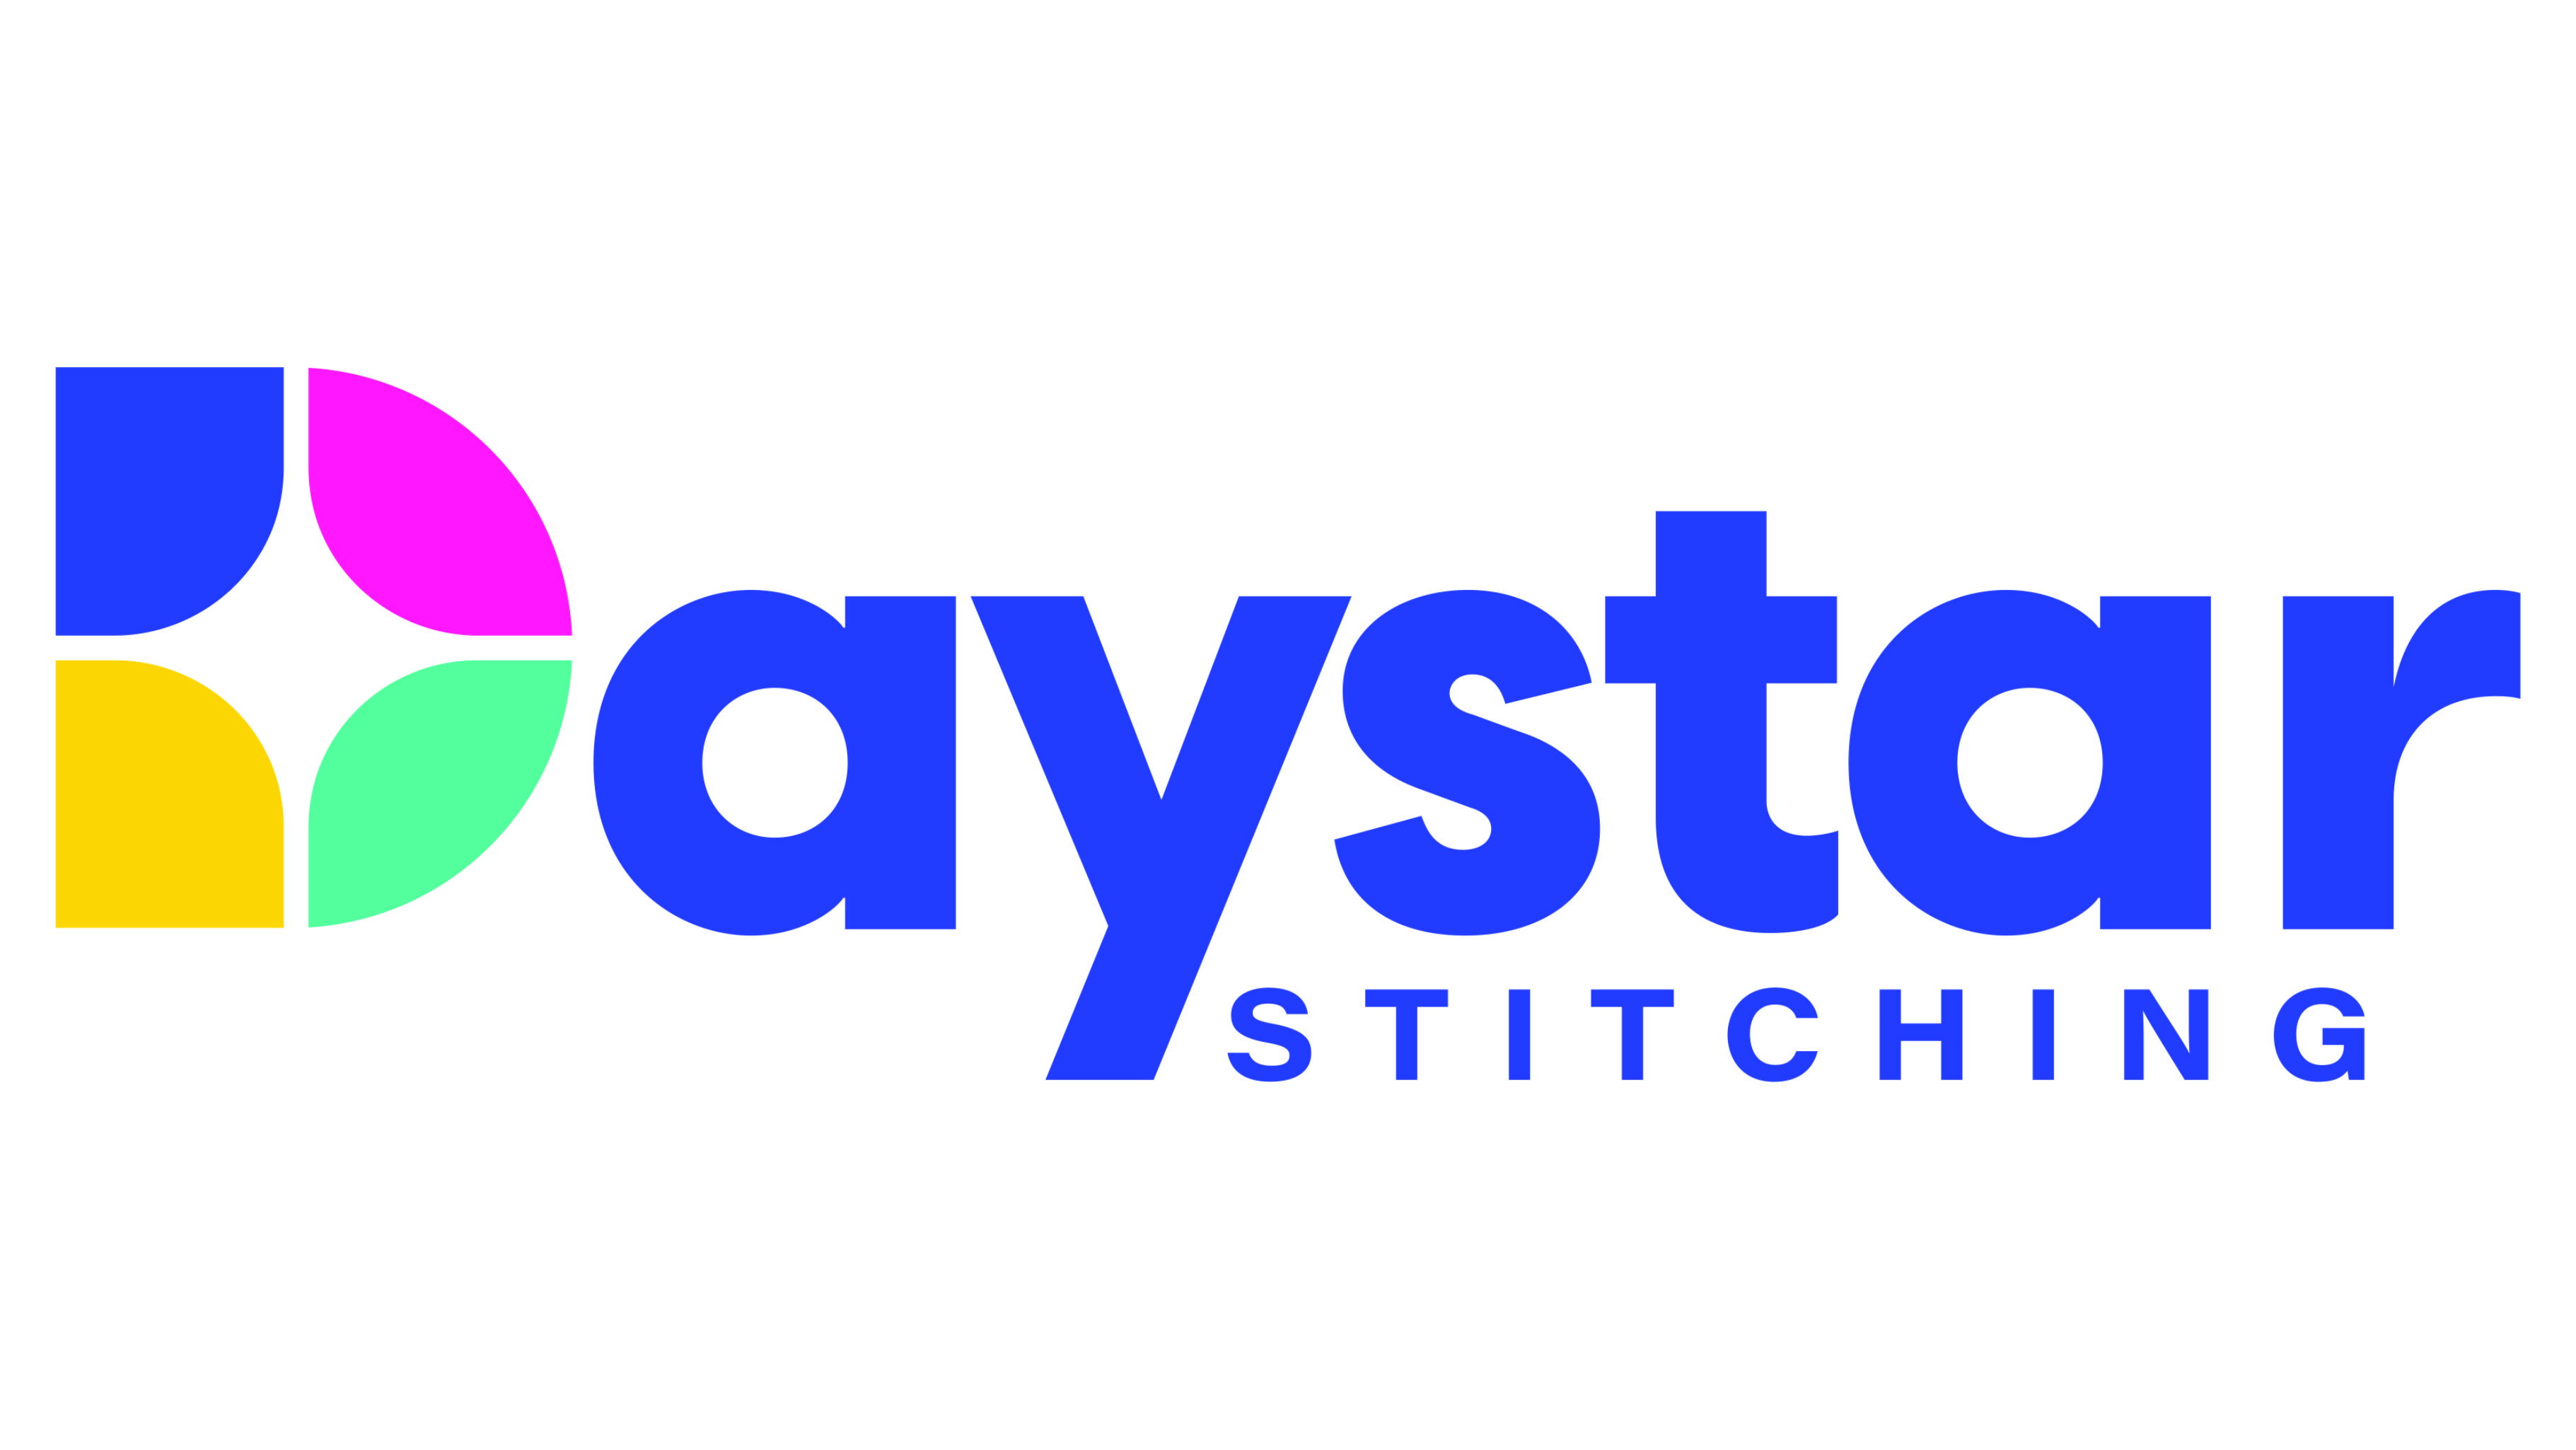 Daystar Stitching Inc.